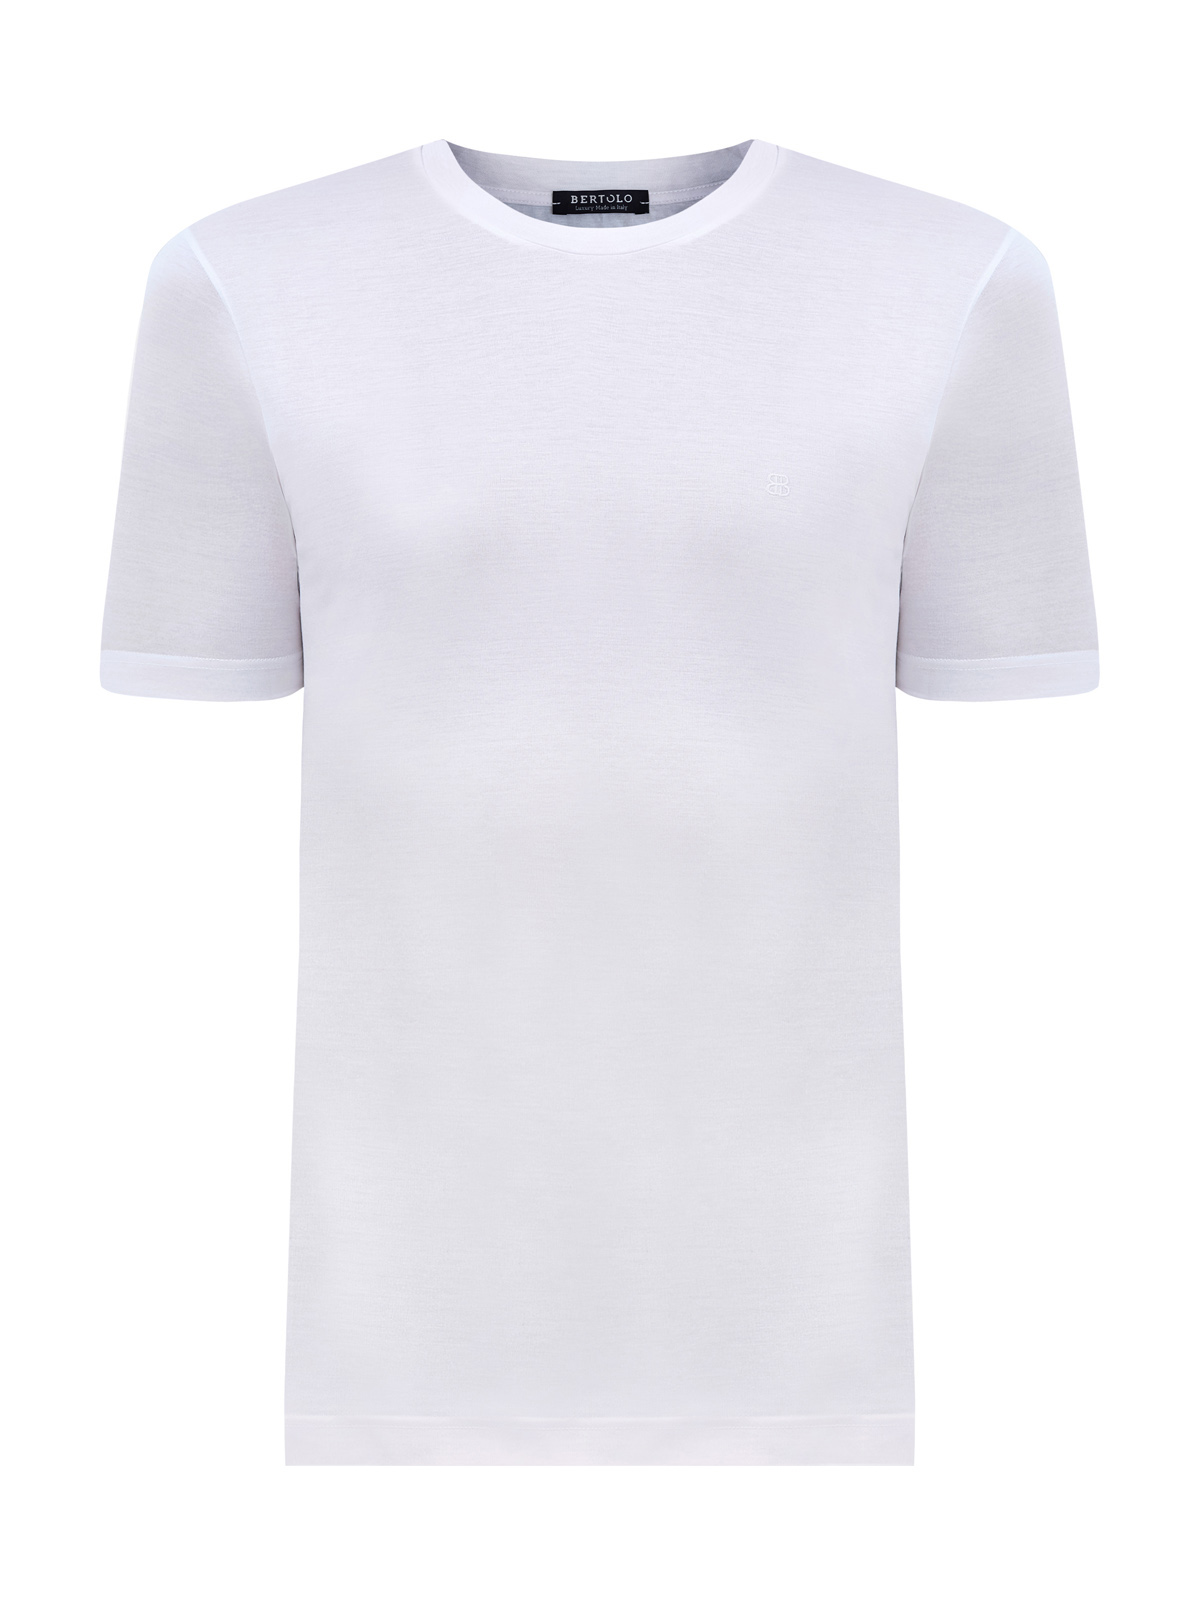 Базовая футболка из хлопка с вышитым логотипом в тон BERTOLO, цвет белый, размер 48;50;52;54;56